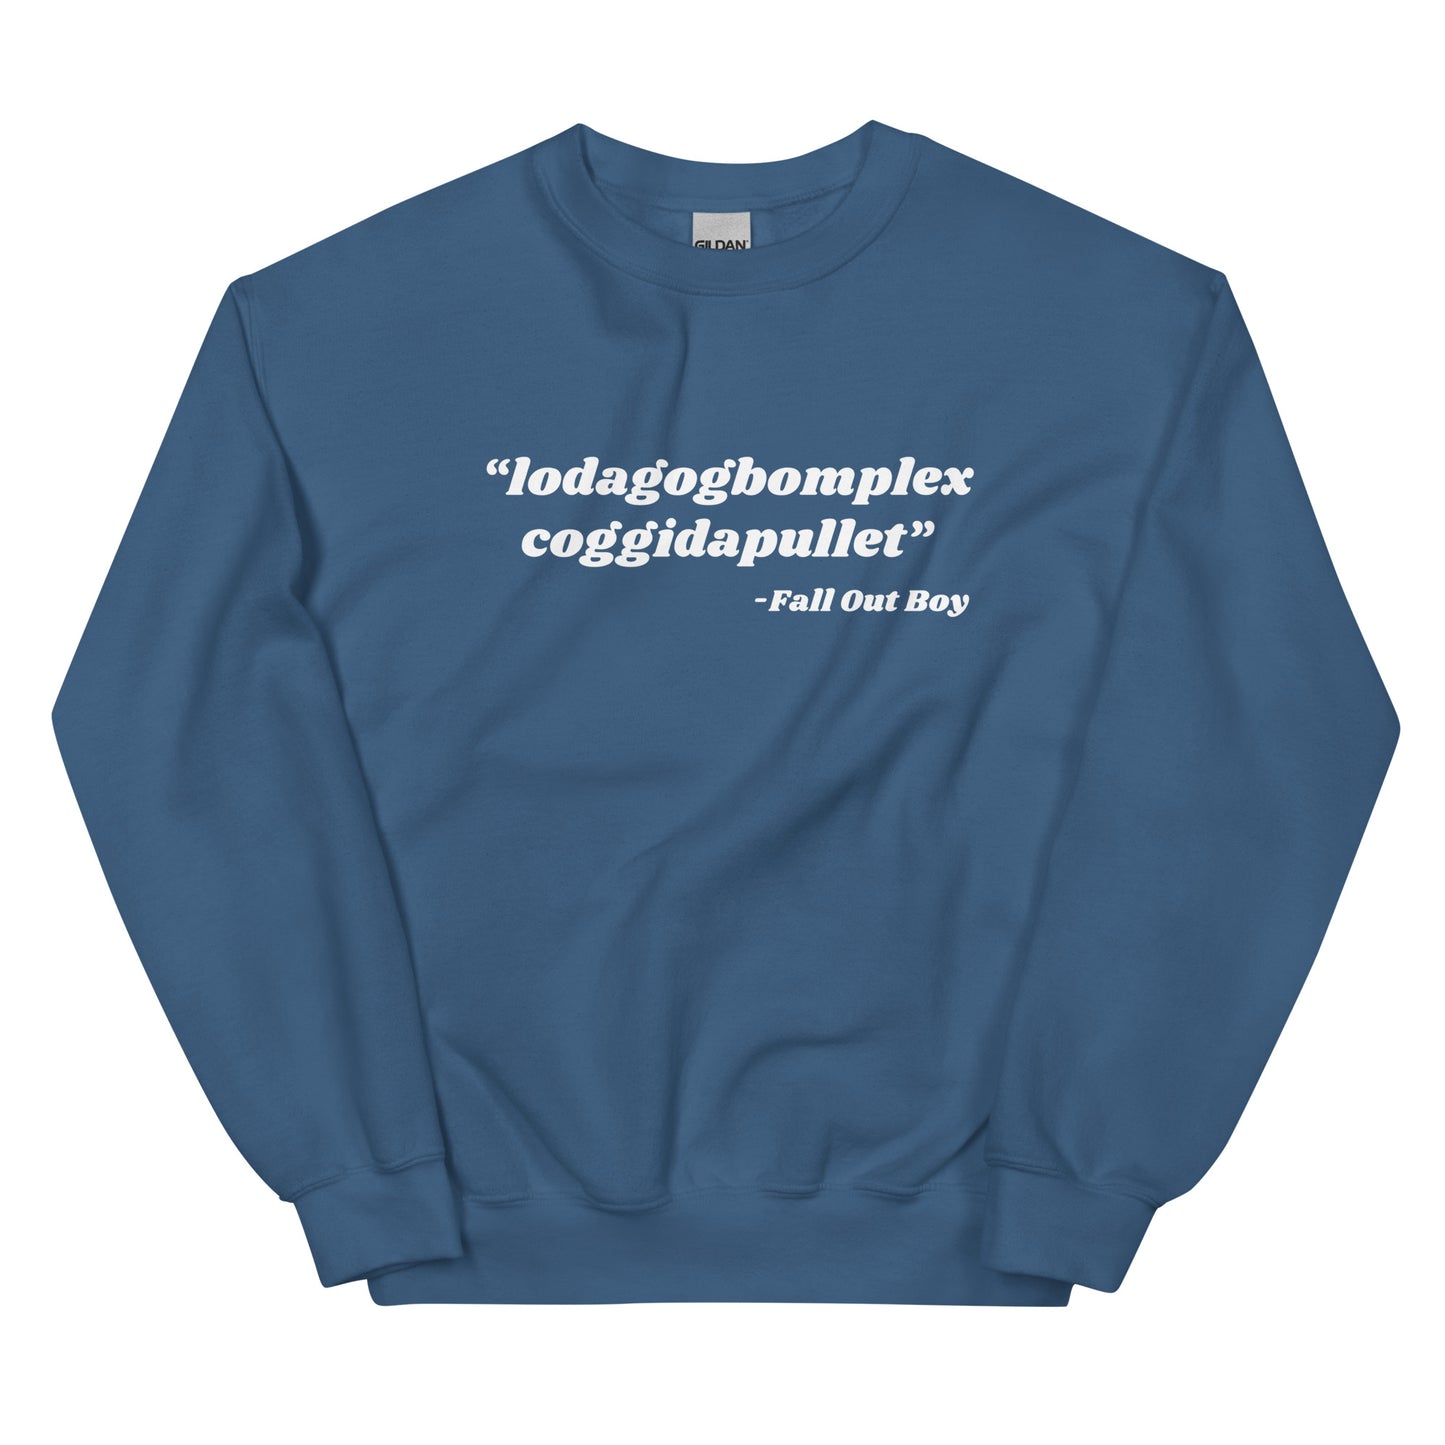 Lodagogbomplex Coggidapullet (Fall Out Boy) Unisex Sweatshirt